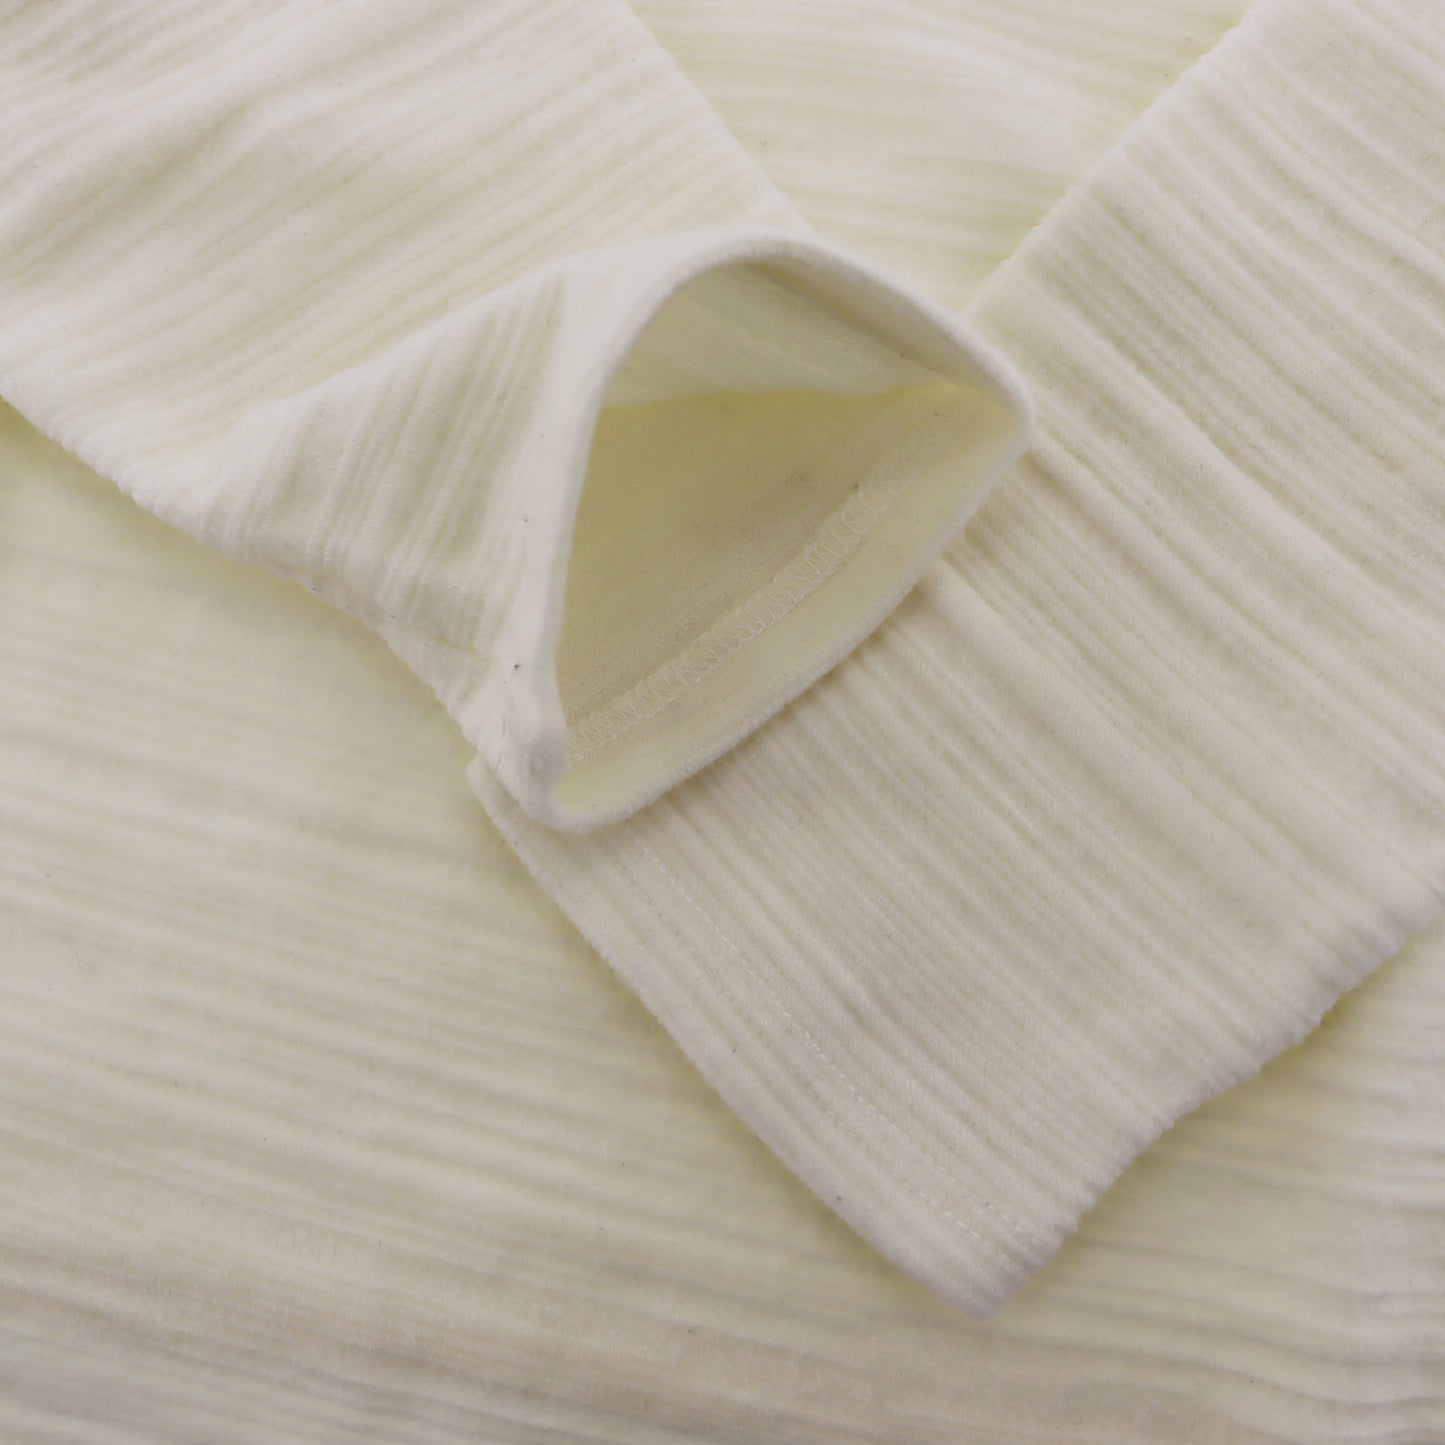 FENDI Jeans Long Sleeve Cotton Short Length Tops White #AG825